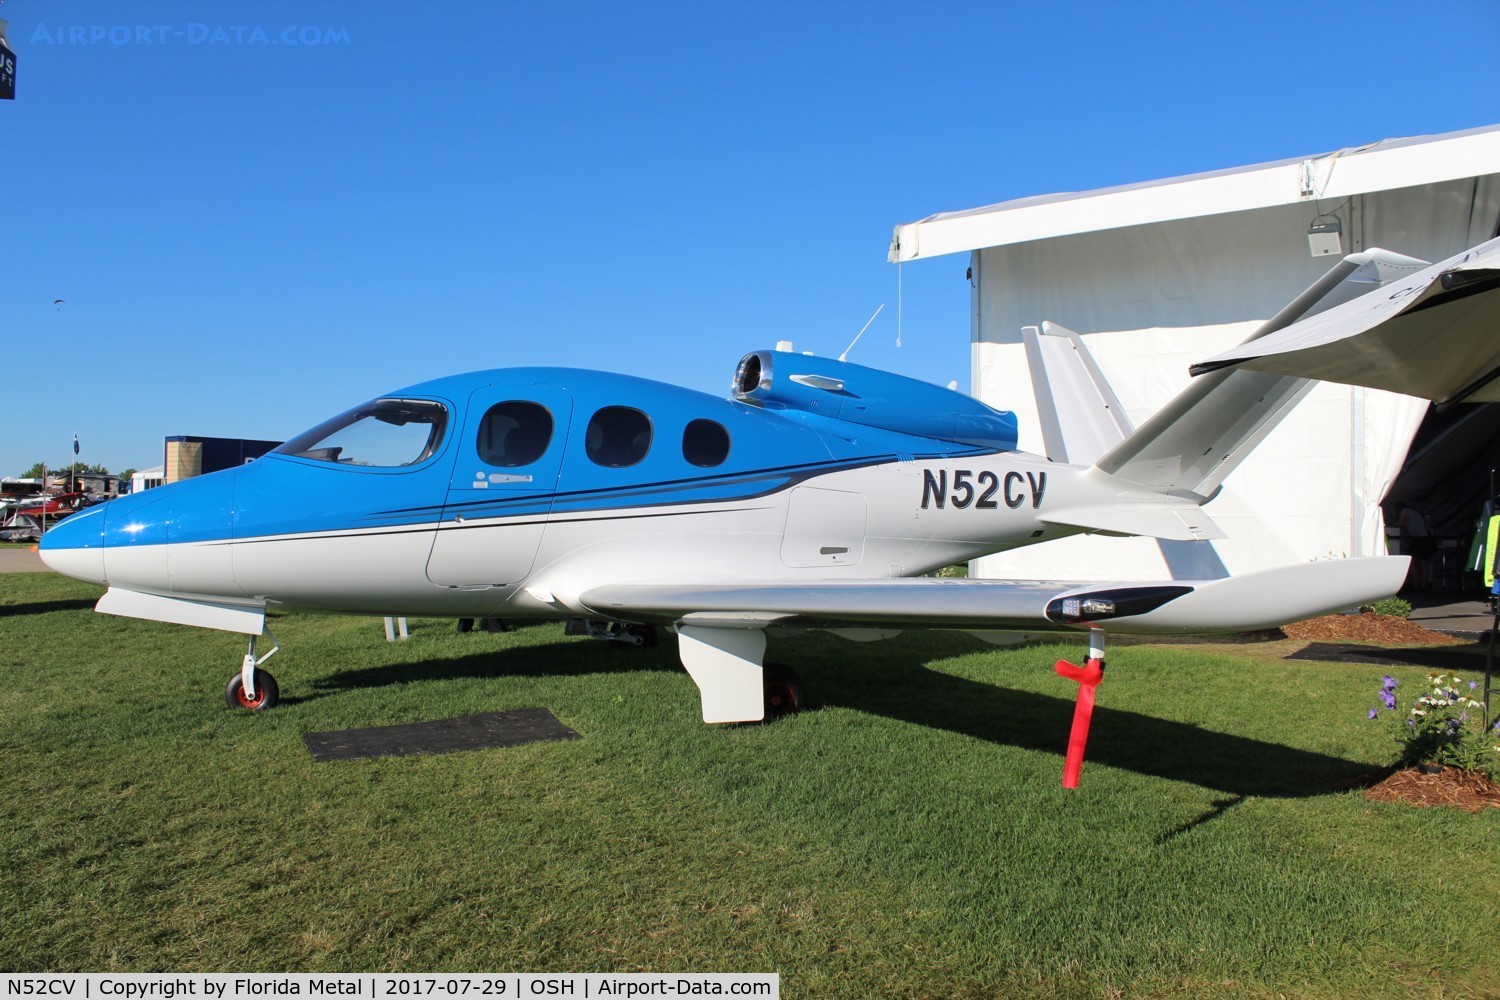 N52CV, 2017 Cirrus SF50 Vision C/N 0010, Cirrus Jet